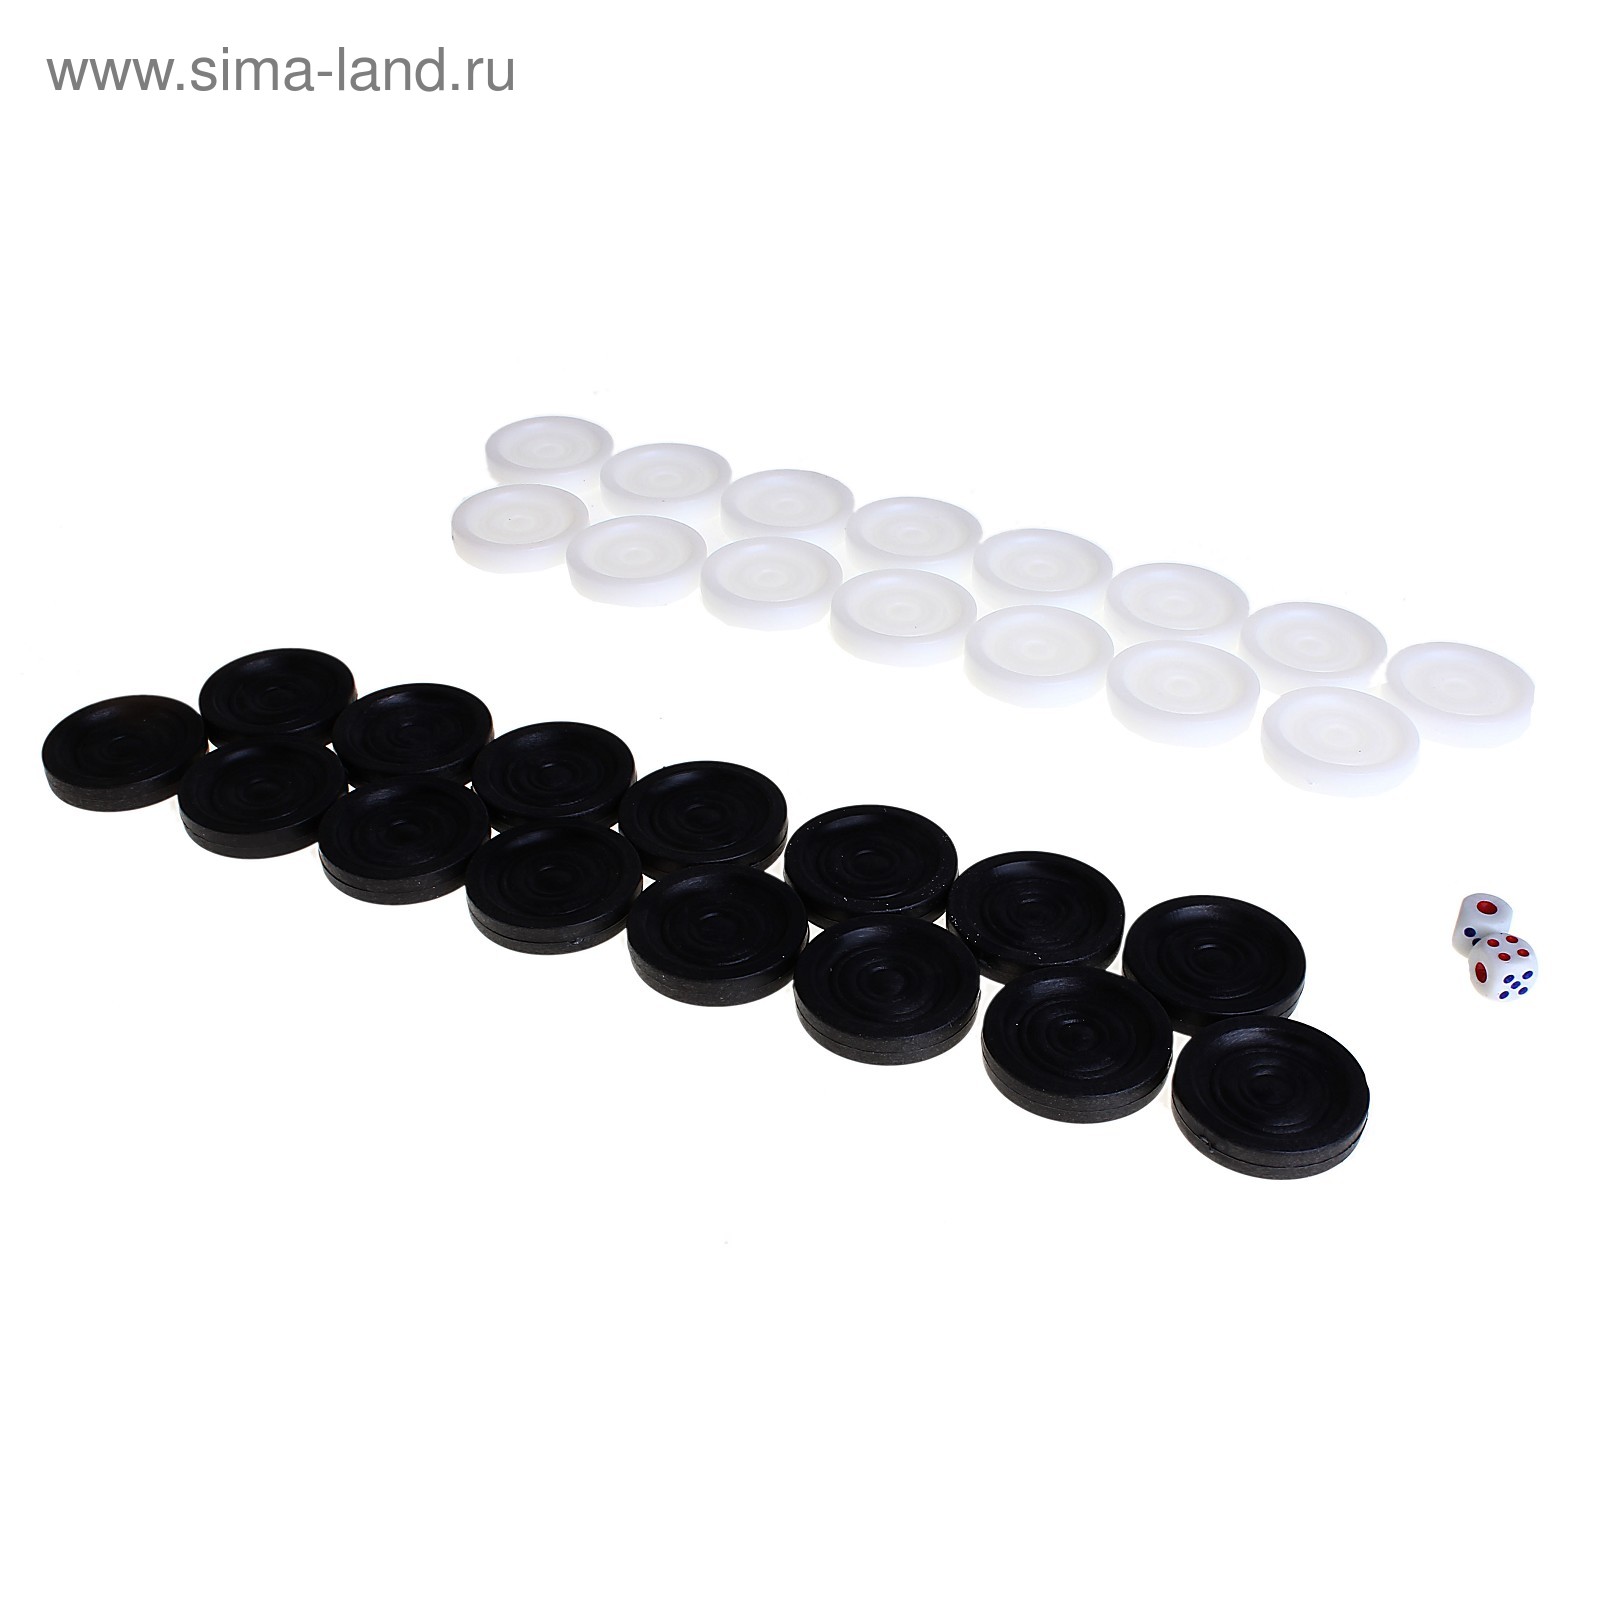 Шашки пластиковые, d=3,1 см, чёрно-белые